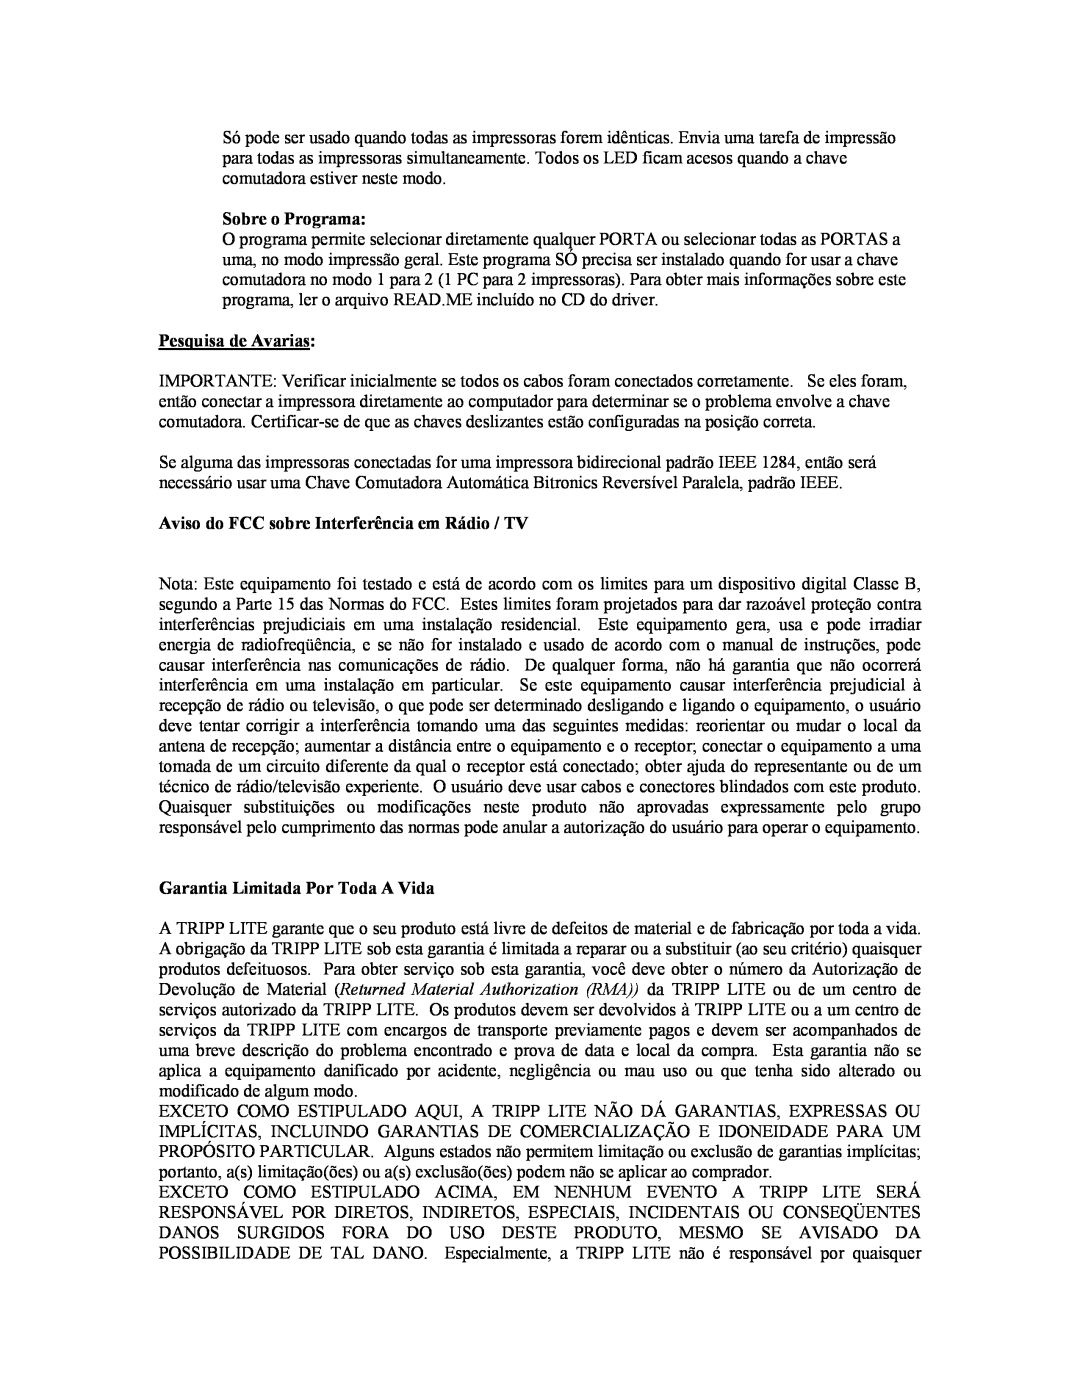 Tripp Lite B160-004-R user manual Sobre o Programa, Pesquisa de Avarias, Aviso do FCC sobre Interferência em Rádio / TV 